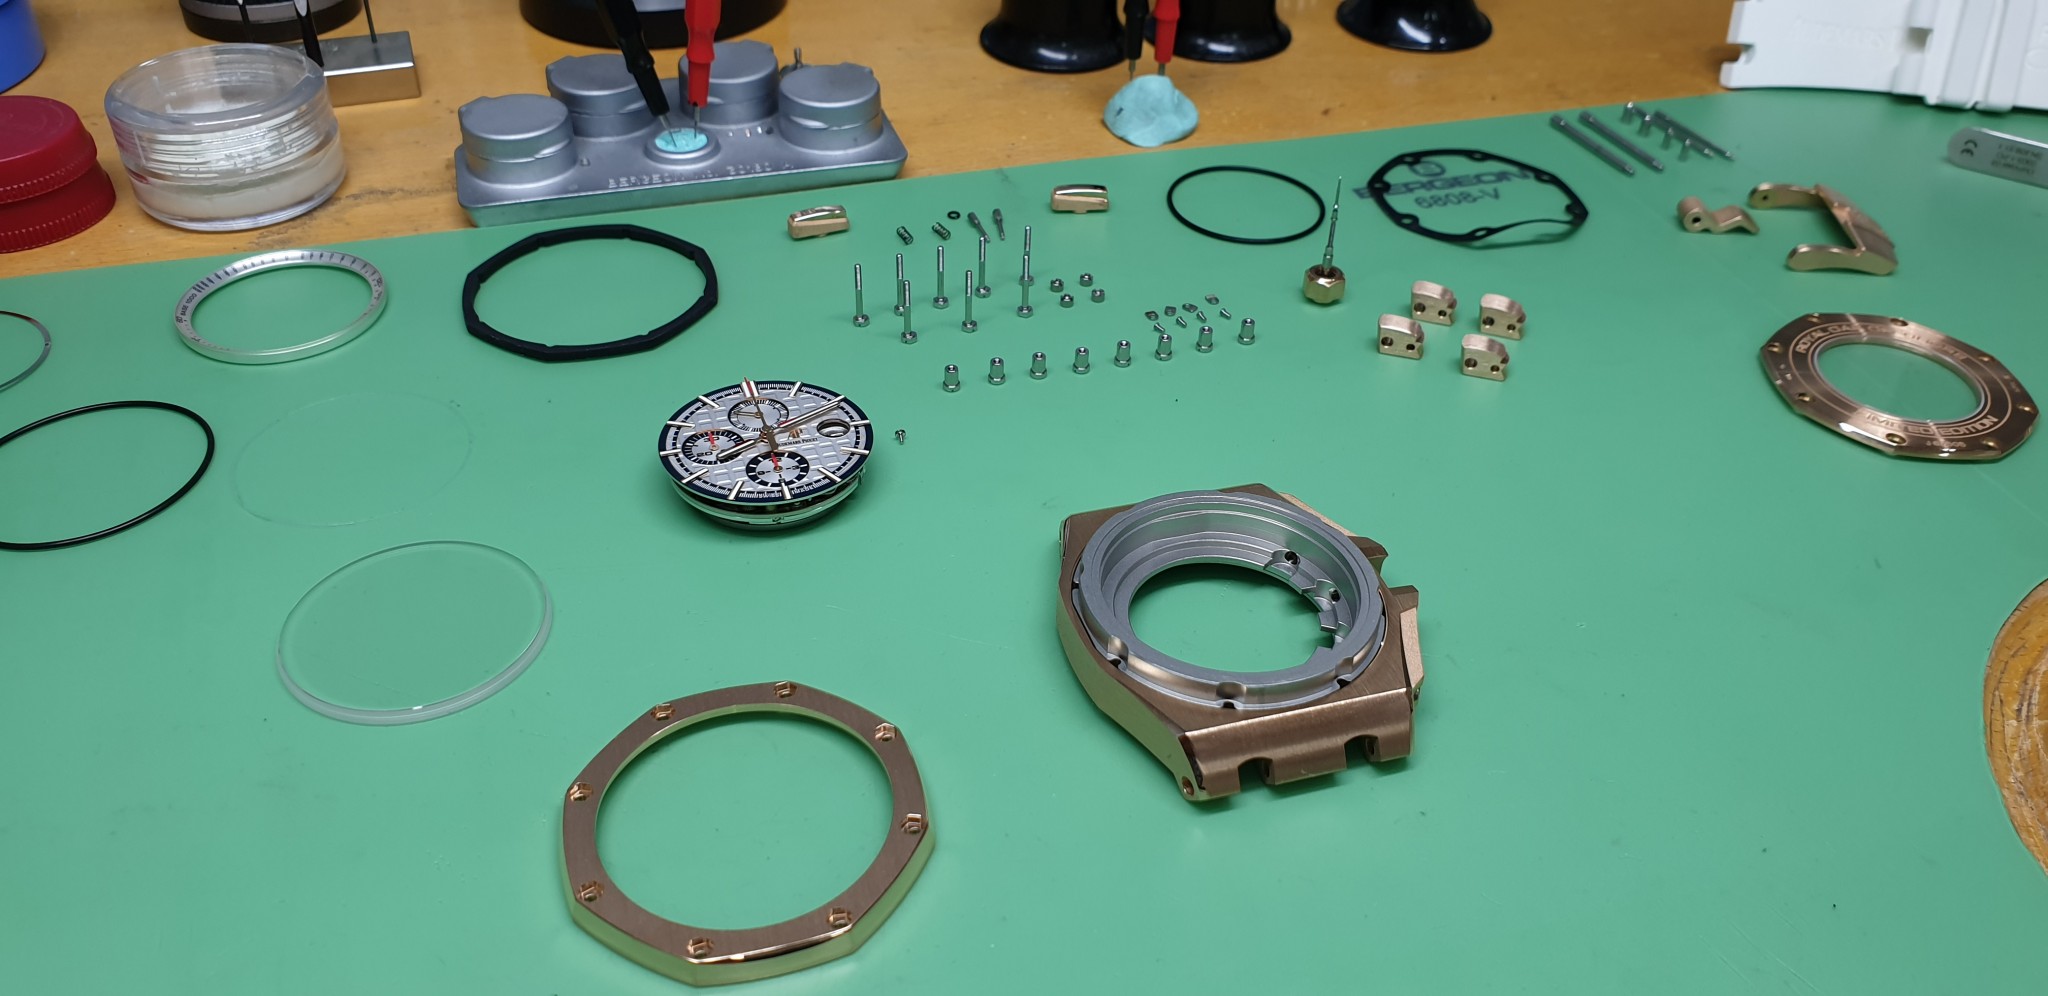 We repair Audemars Piguet watches